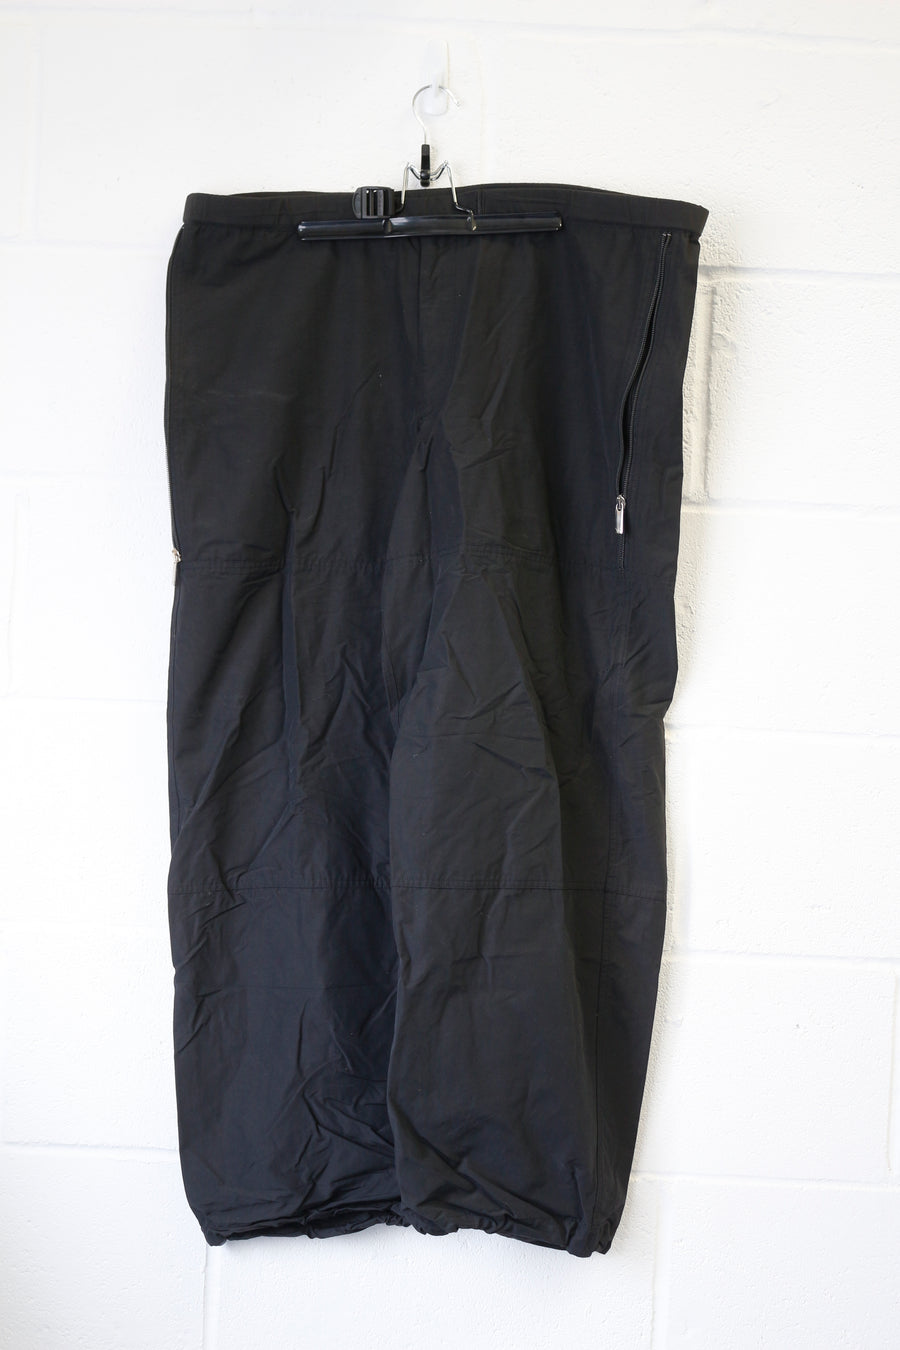 (32-36) Emporio Armani AW1999 Ballistic Nylon Technical Utility Trousers with Bottle Pocket